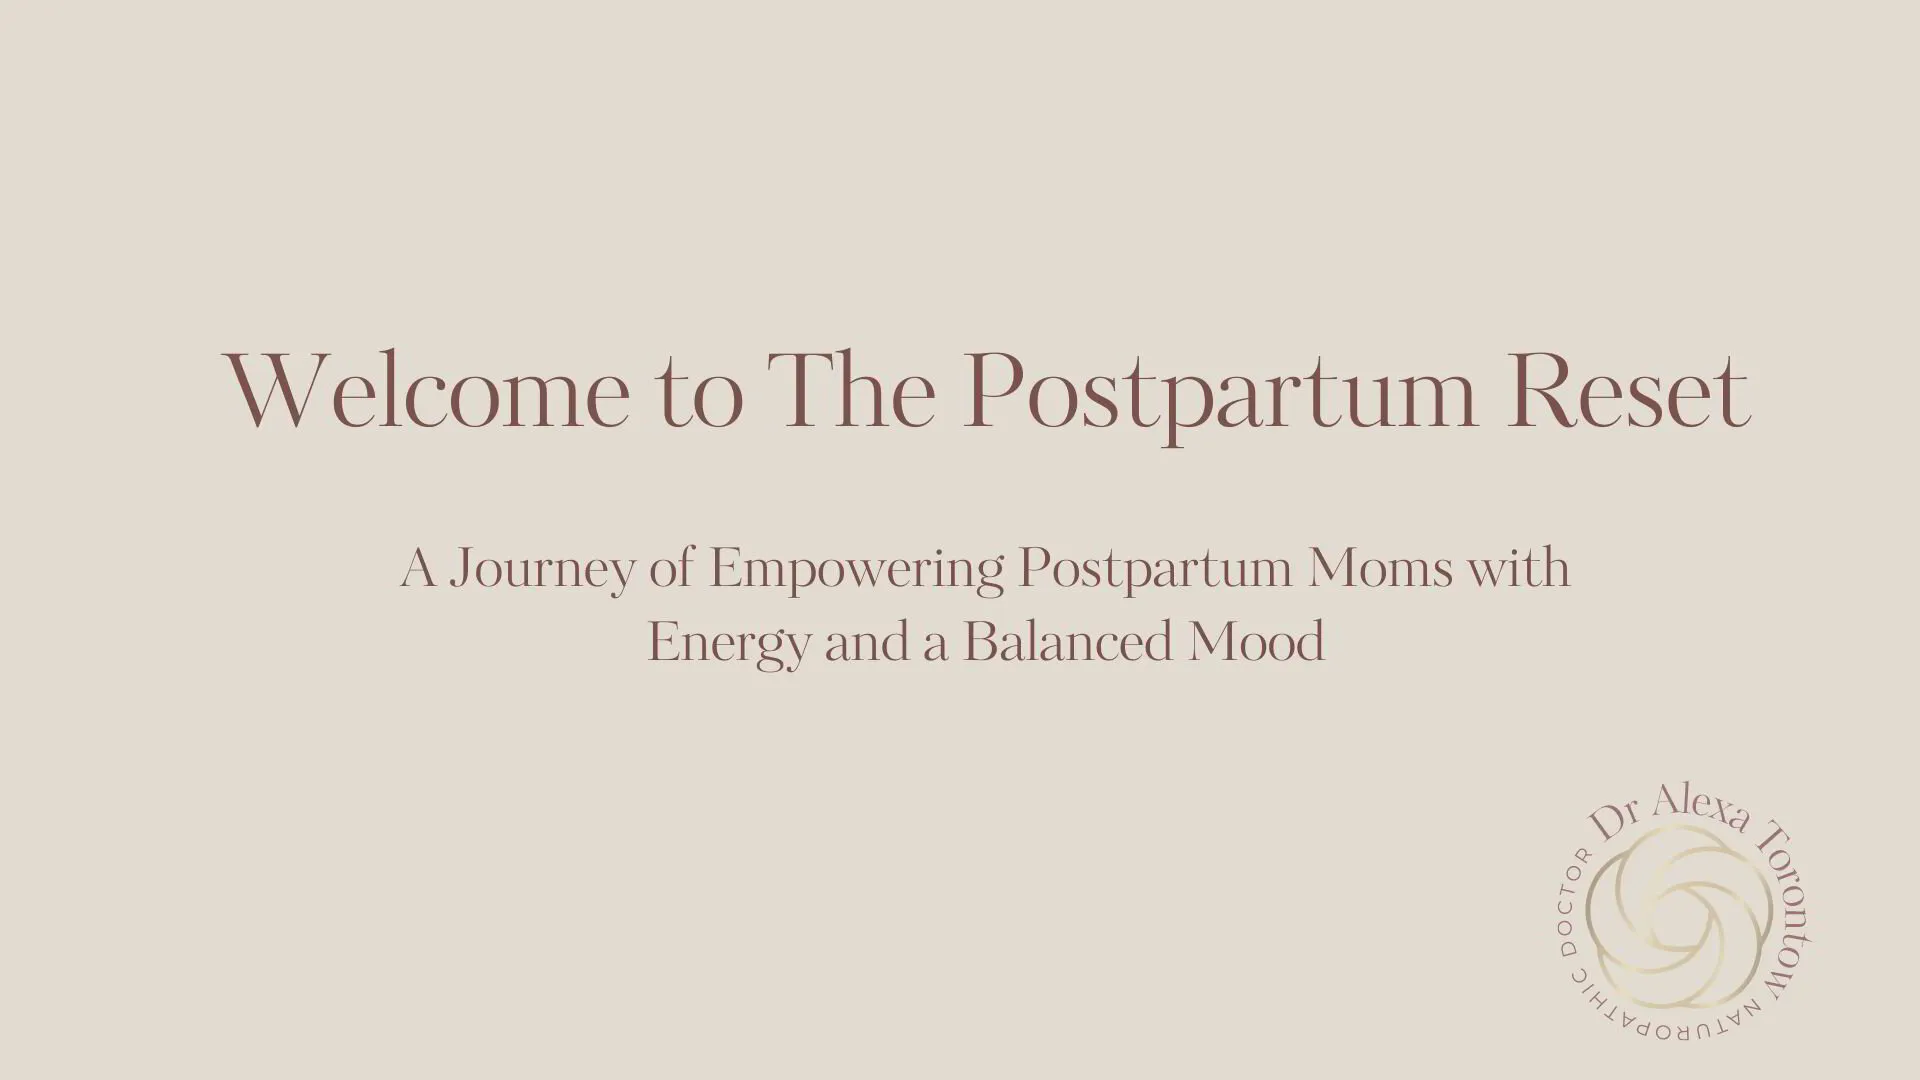 The Postpartum Reset